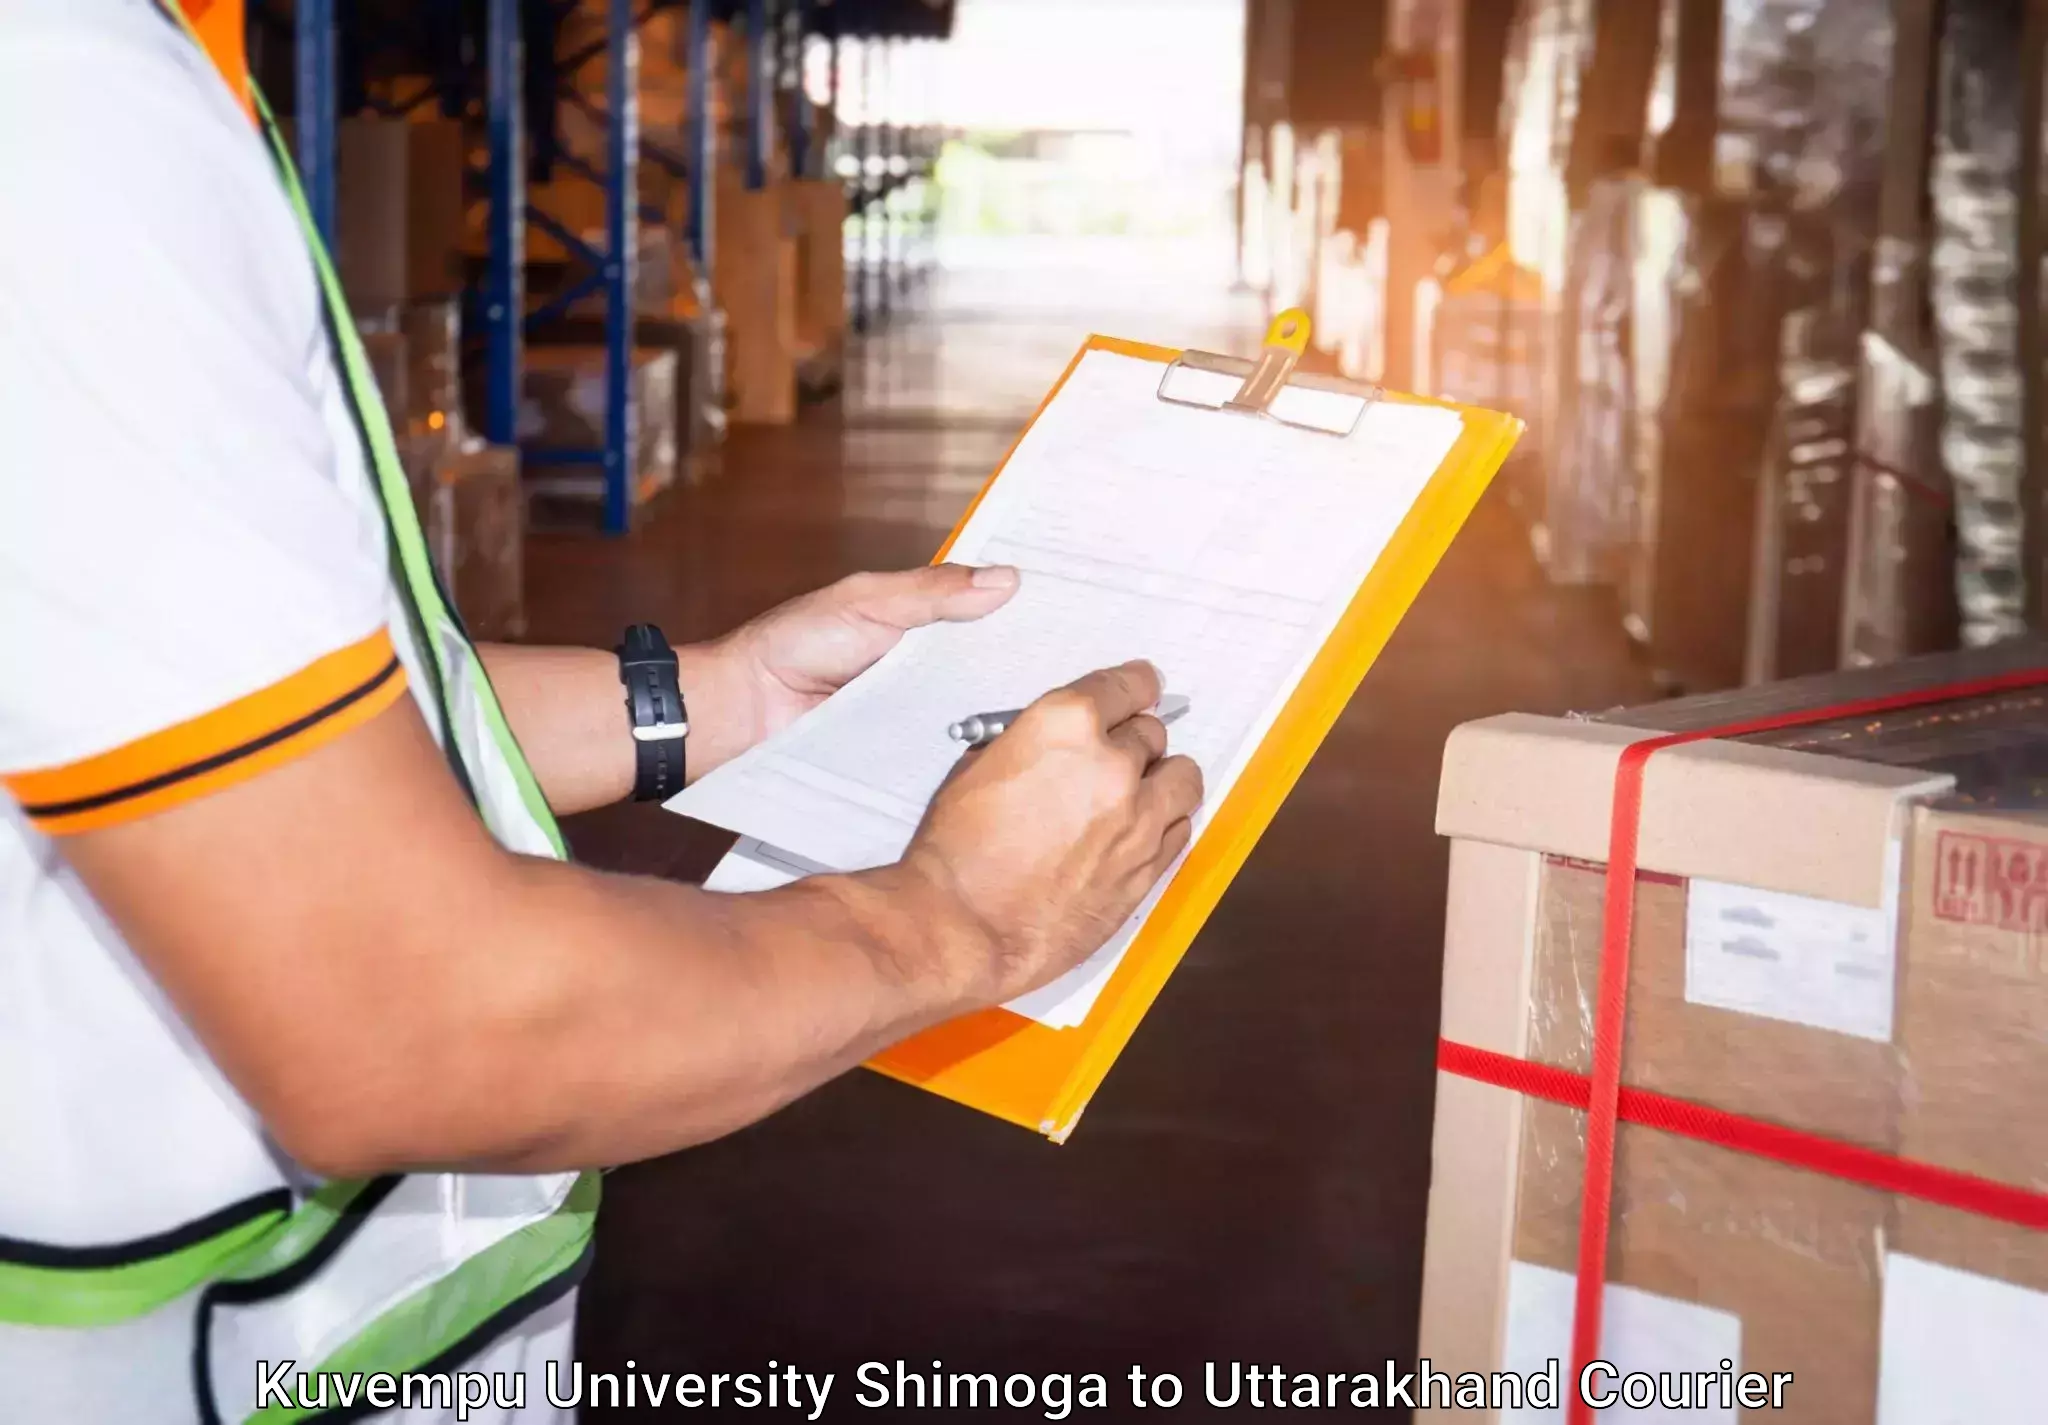 Luggage transport logistics in Kuvempu University Shimoga to Khatima